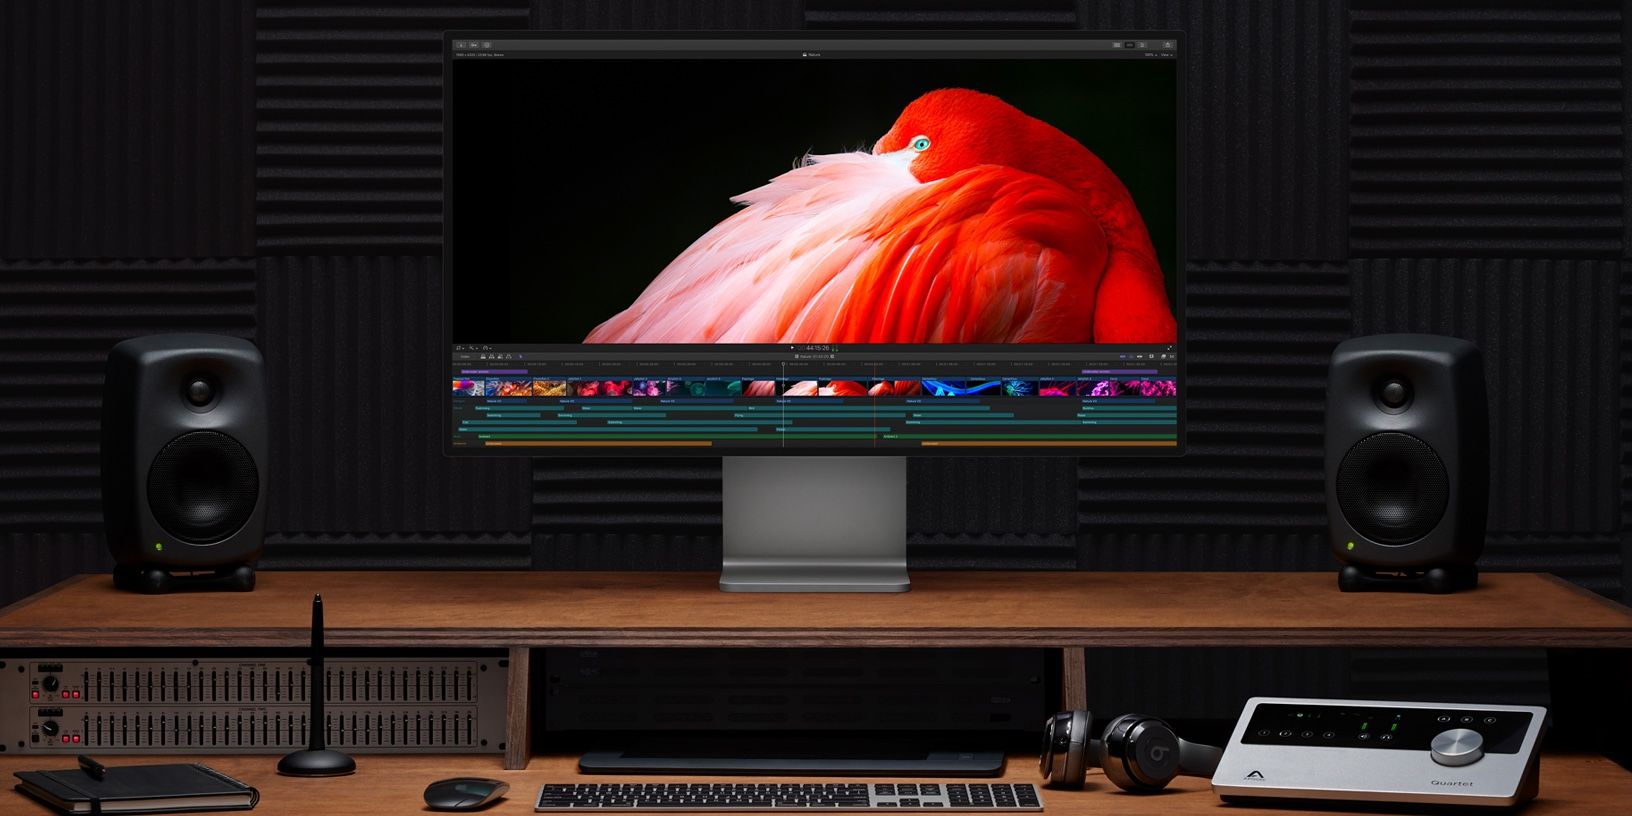 Pantalla de estudio vs.  Pro Display XDR: monitores de $ 1,600 y $ 5,000 comparados